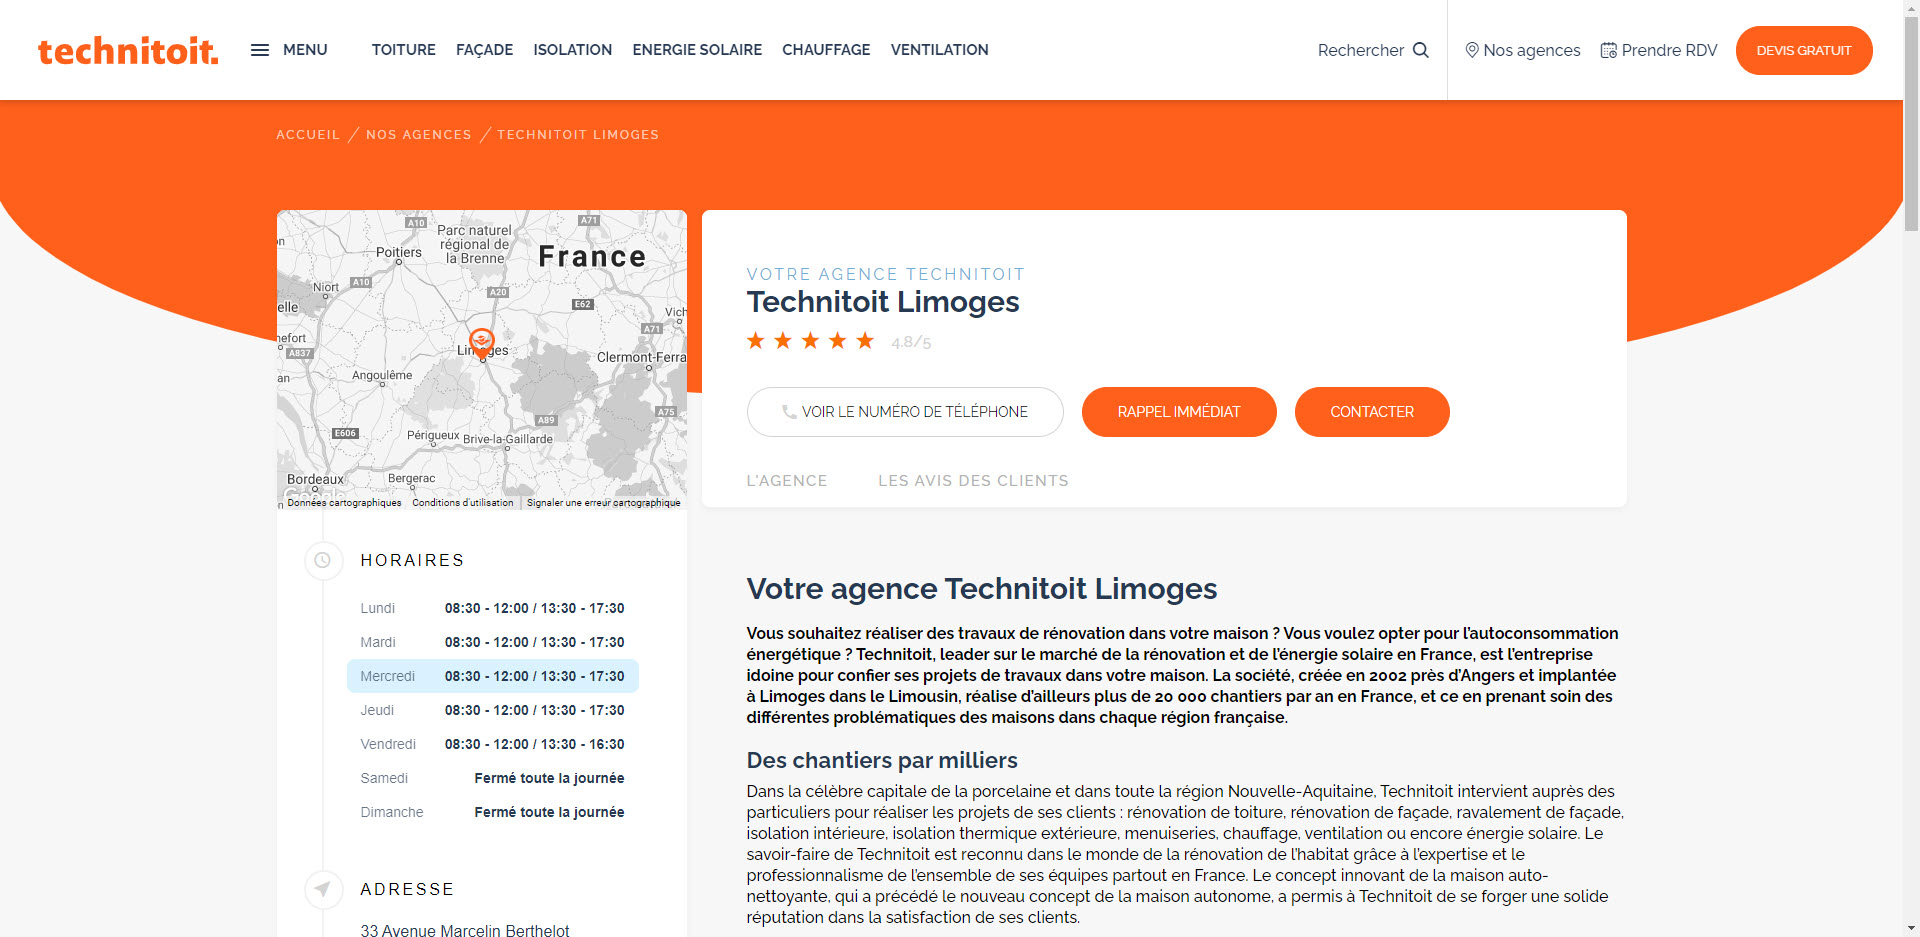 Technitoit Limoges : une référence pour la rénovation maison